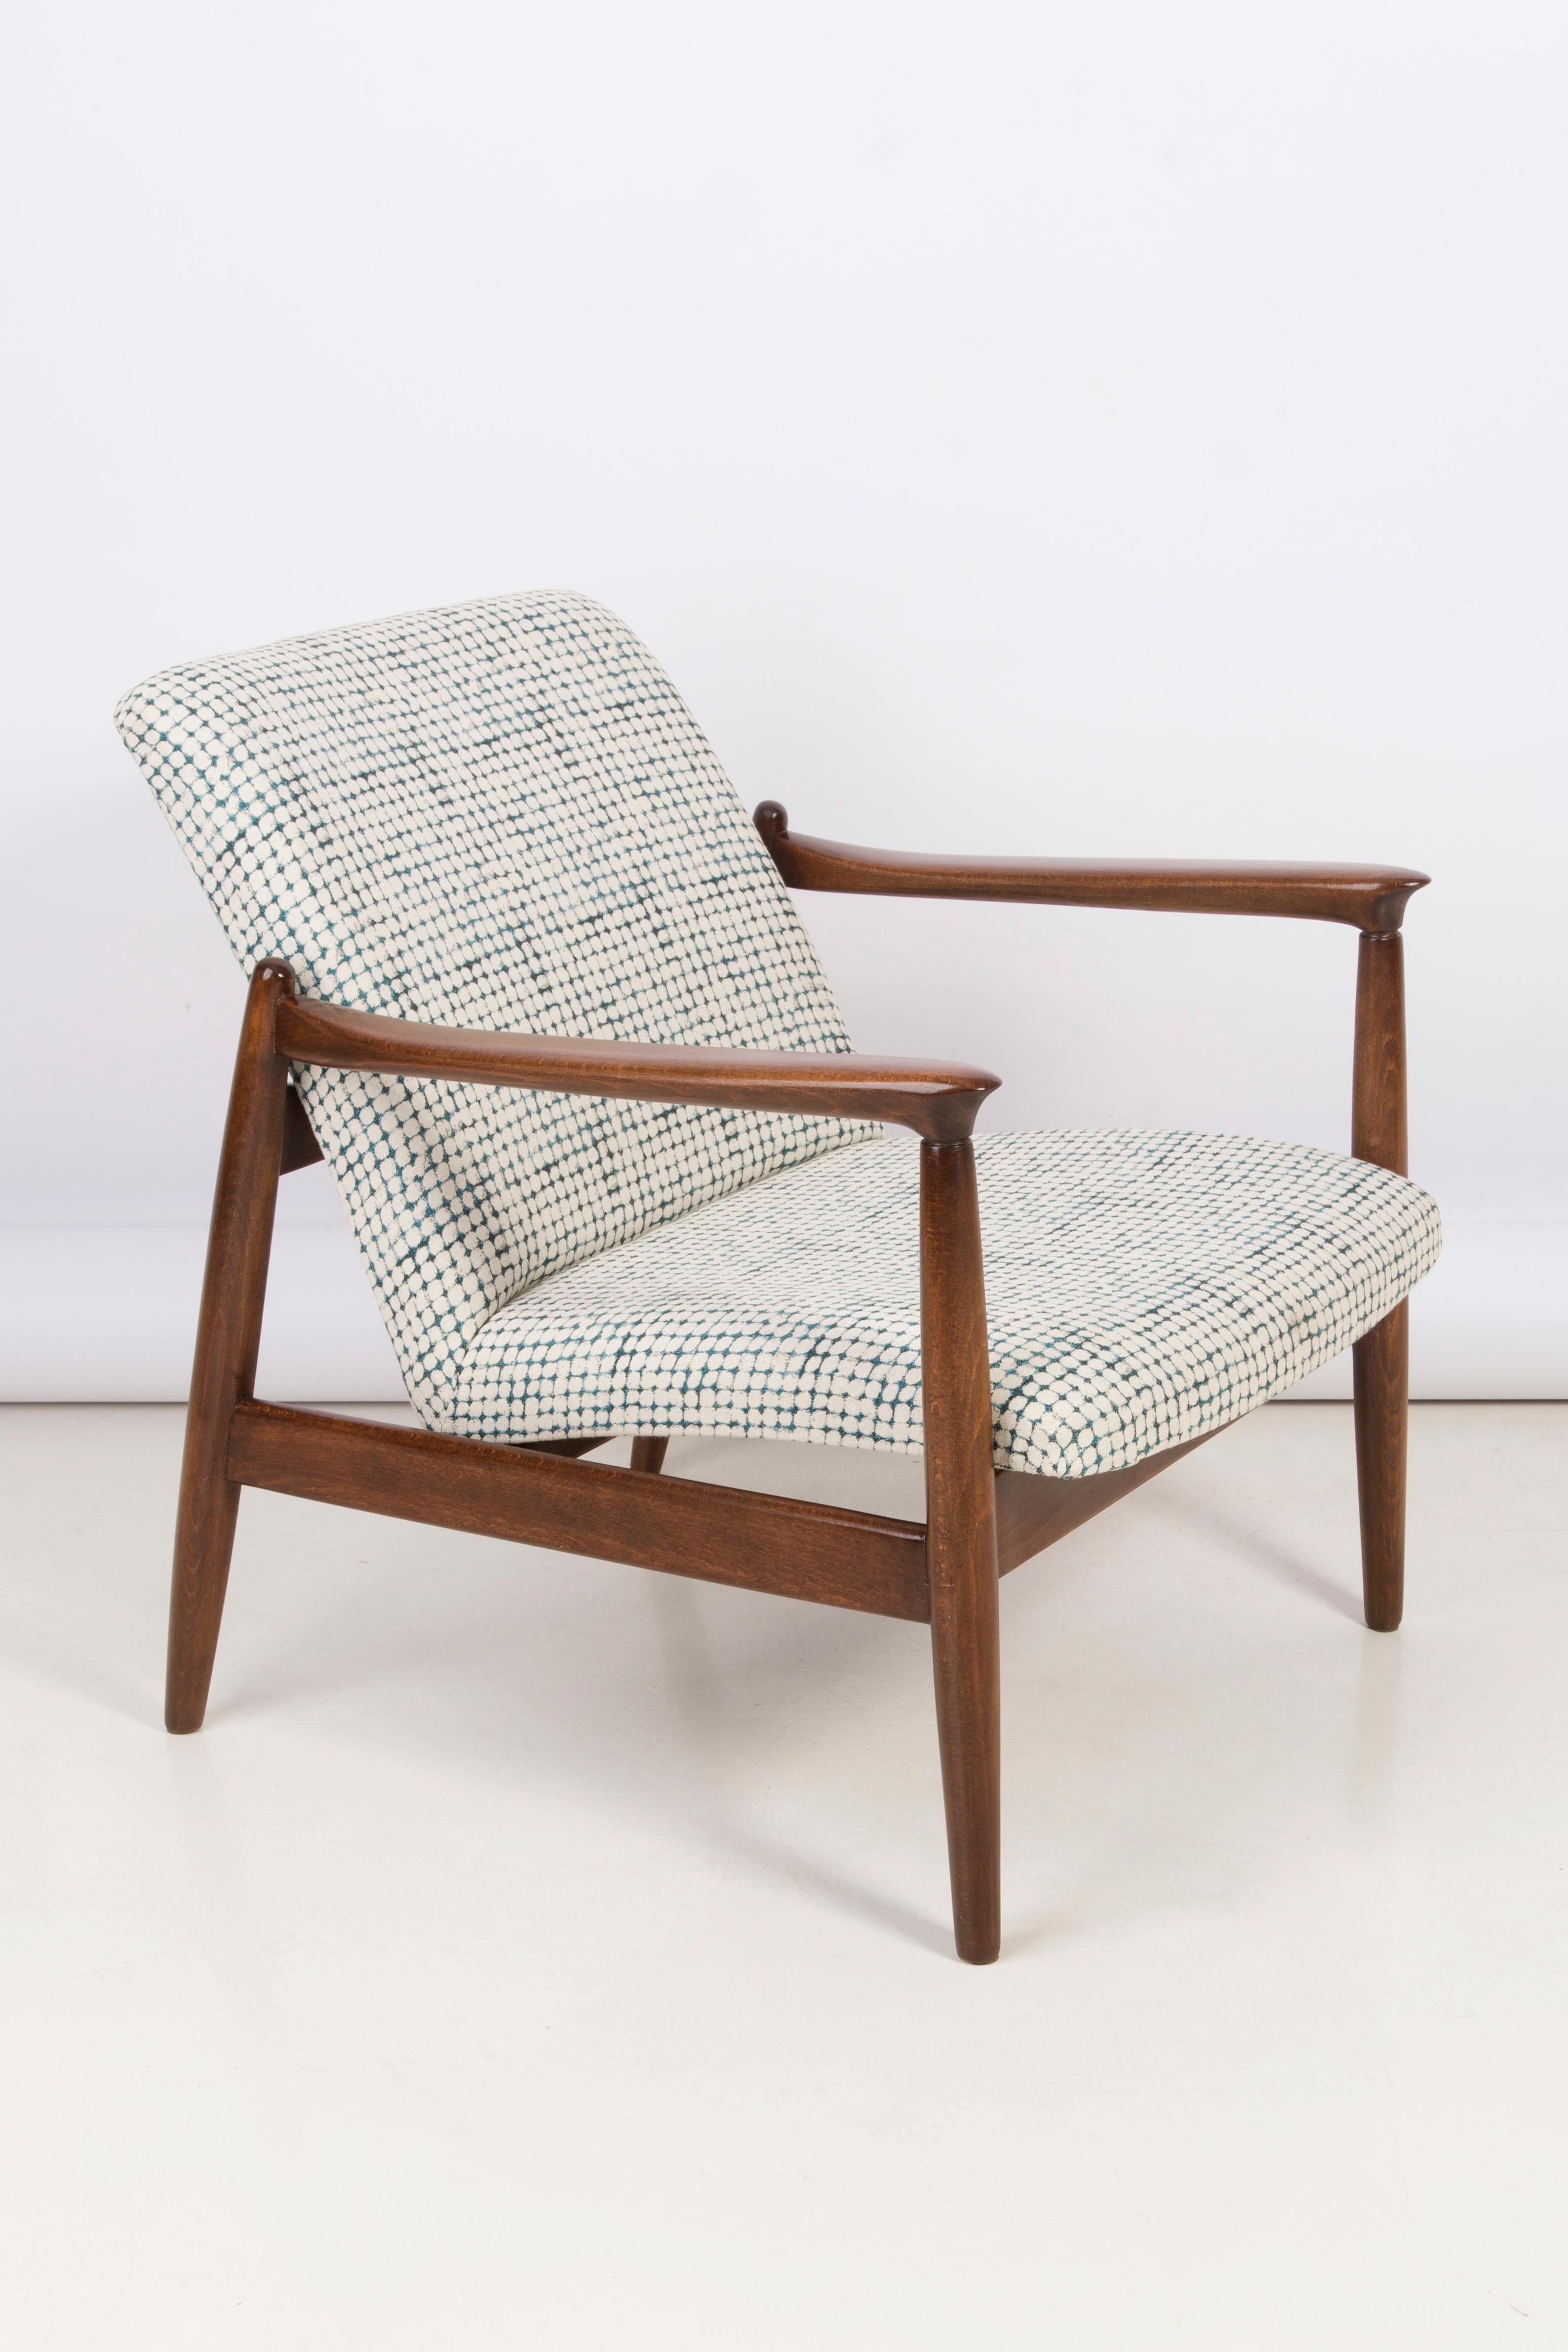 Magnifique fauteuil et tabouret de pied, conçu par Edmund Homa. Le fauteuil a été fabriqué dans les années 1960 dans la fabrique de meubles Goscieninska en bois de hêtre massif. Le fauteuil de type GFM est considéré comme l'un des meilleurs